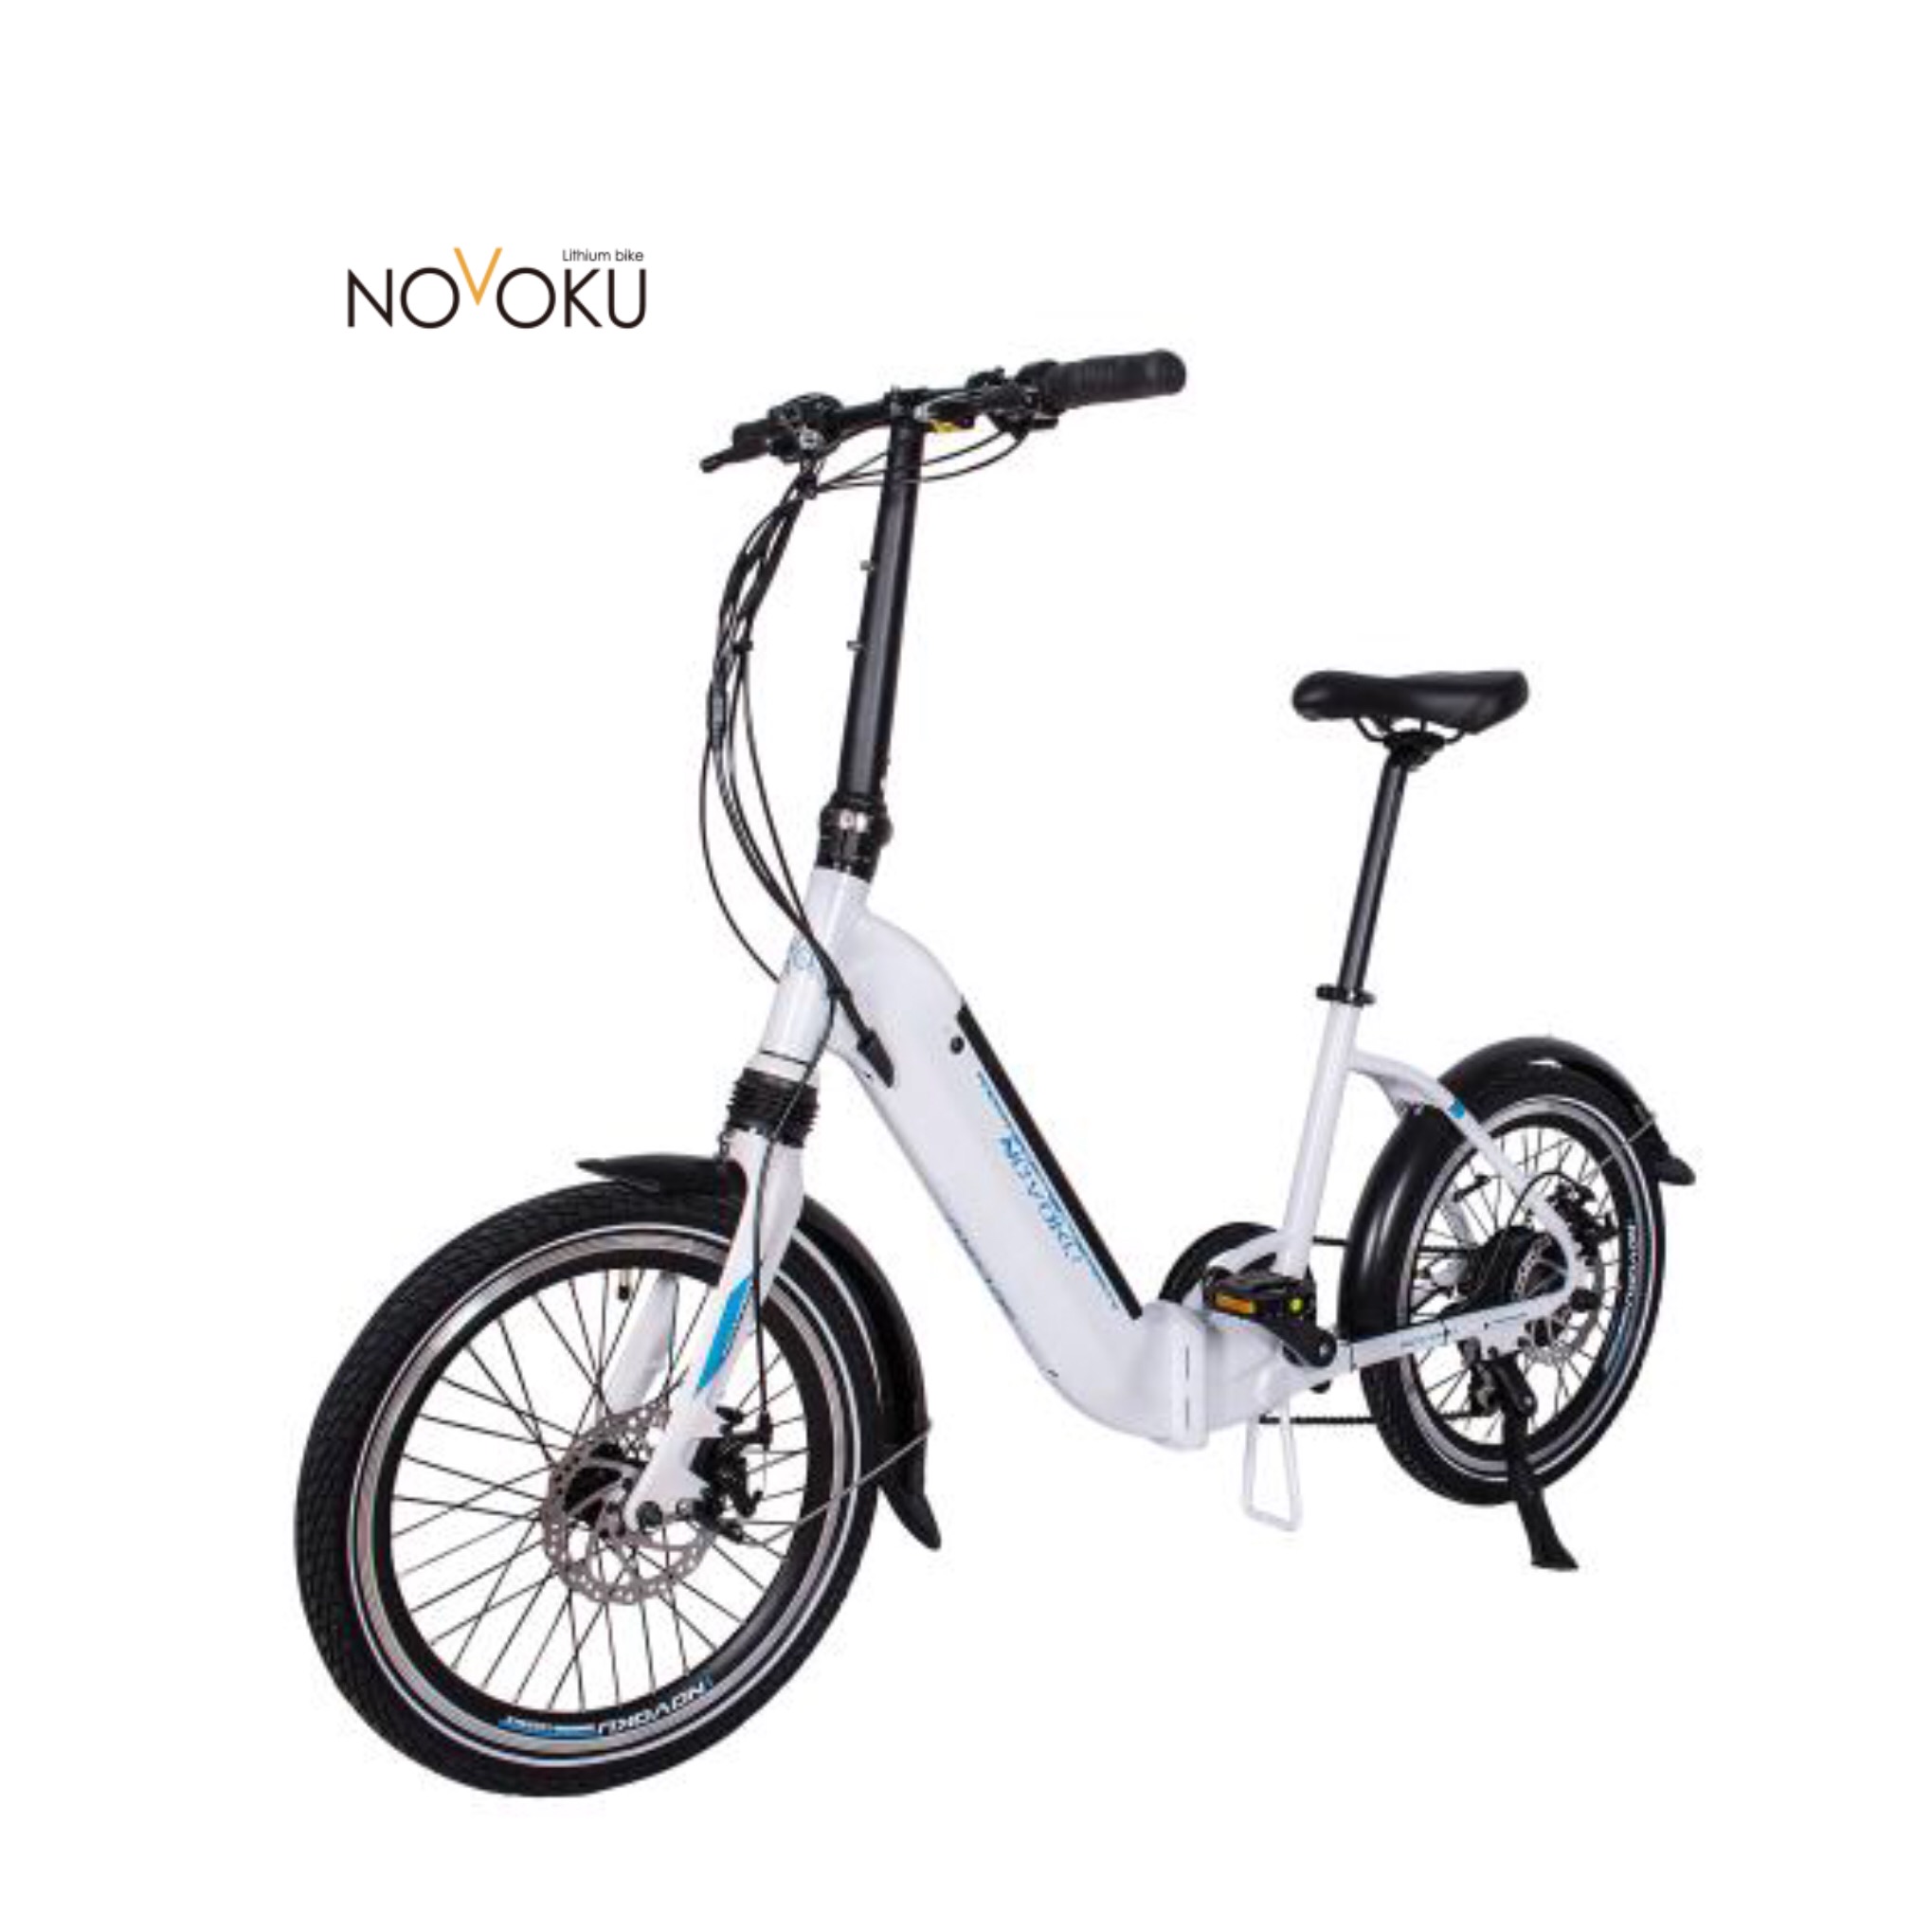   LEEF 8630 Eletric Складной велосипед 